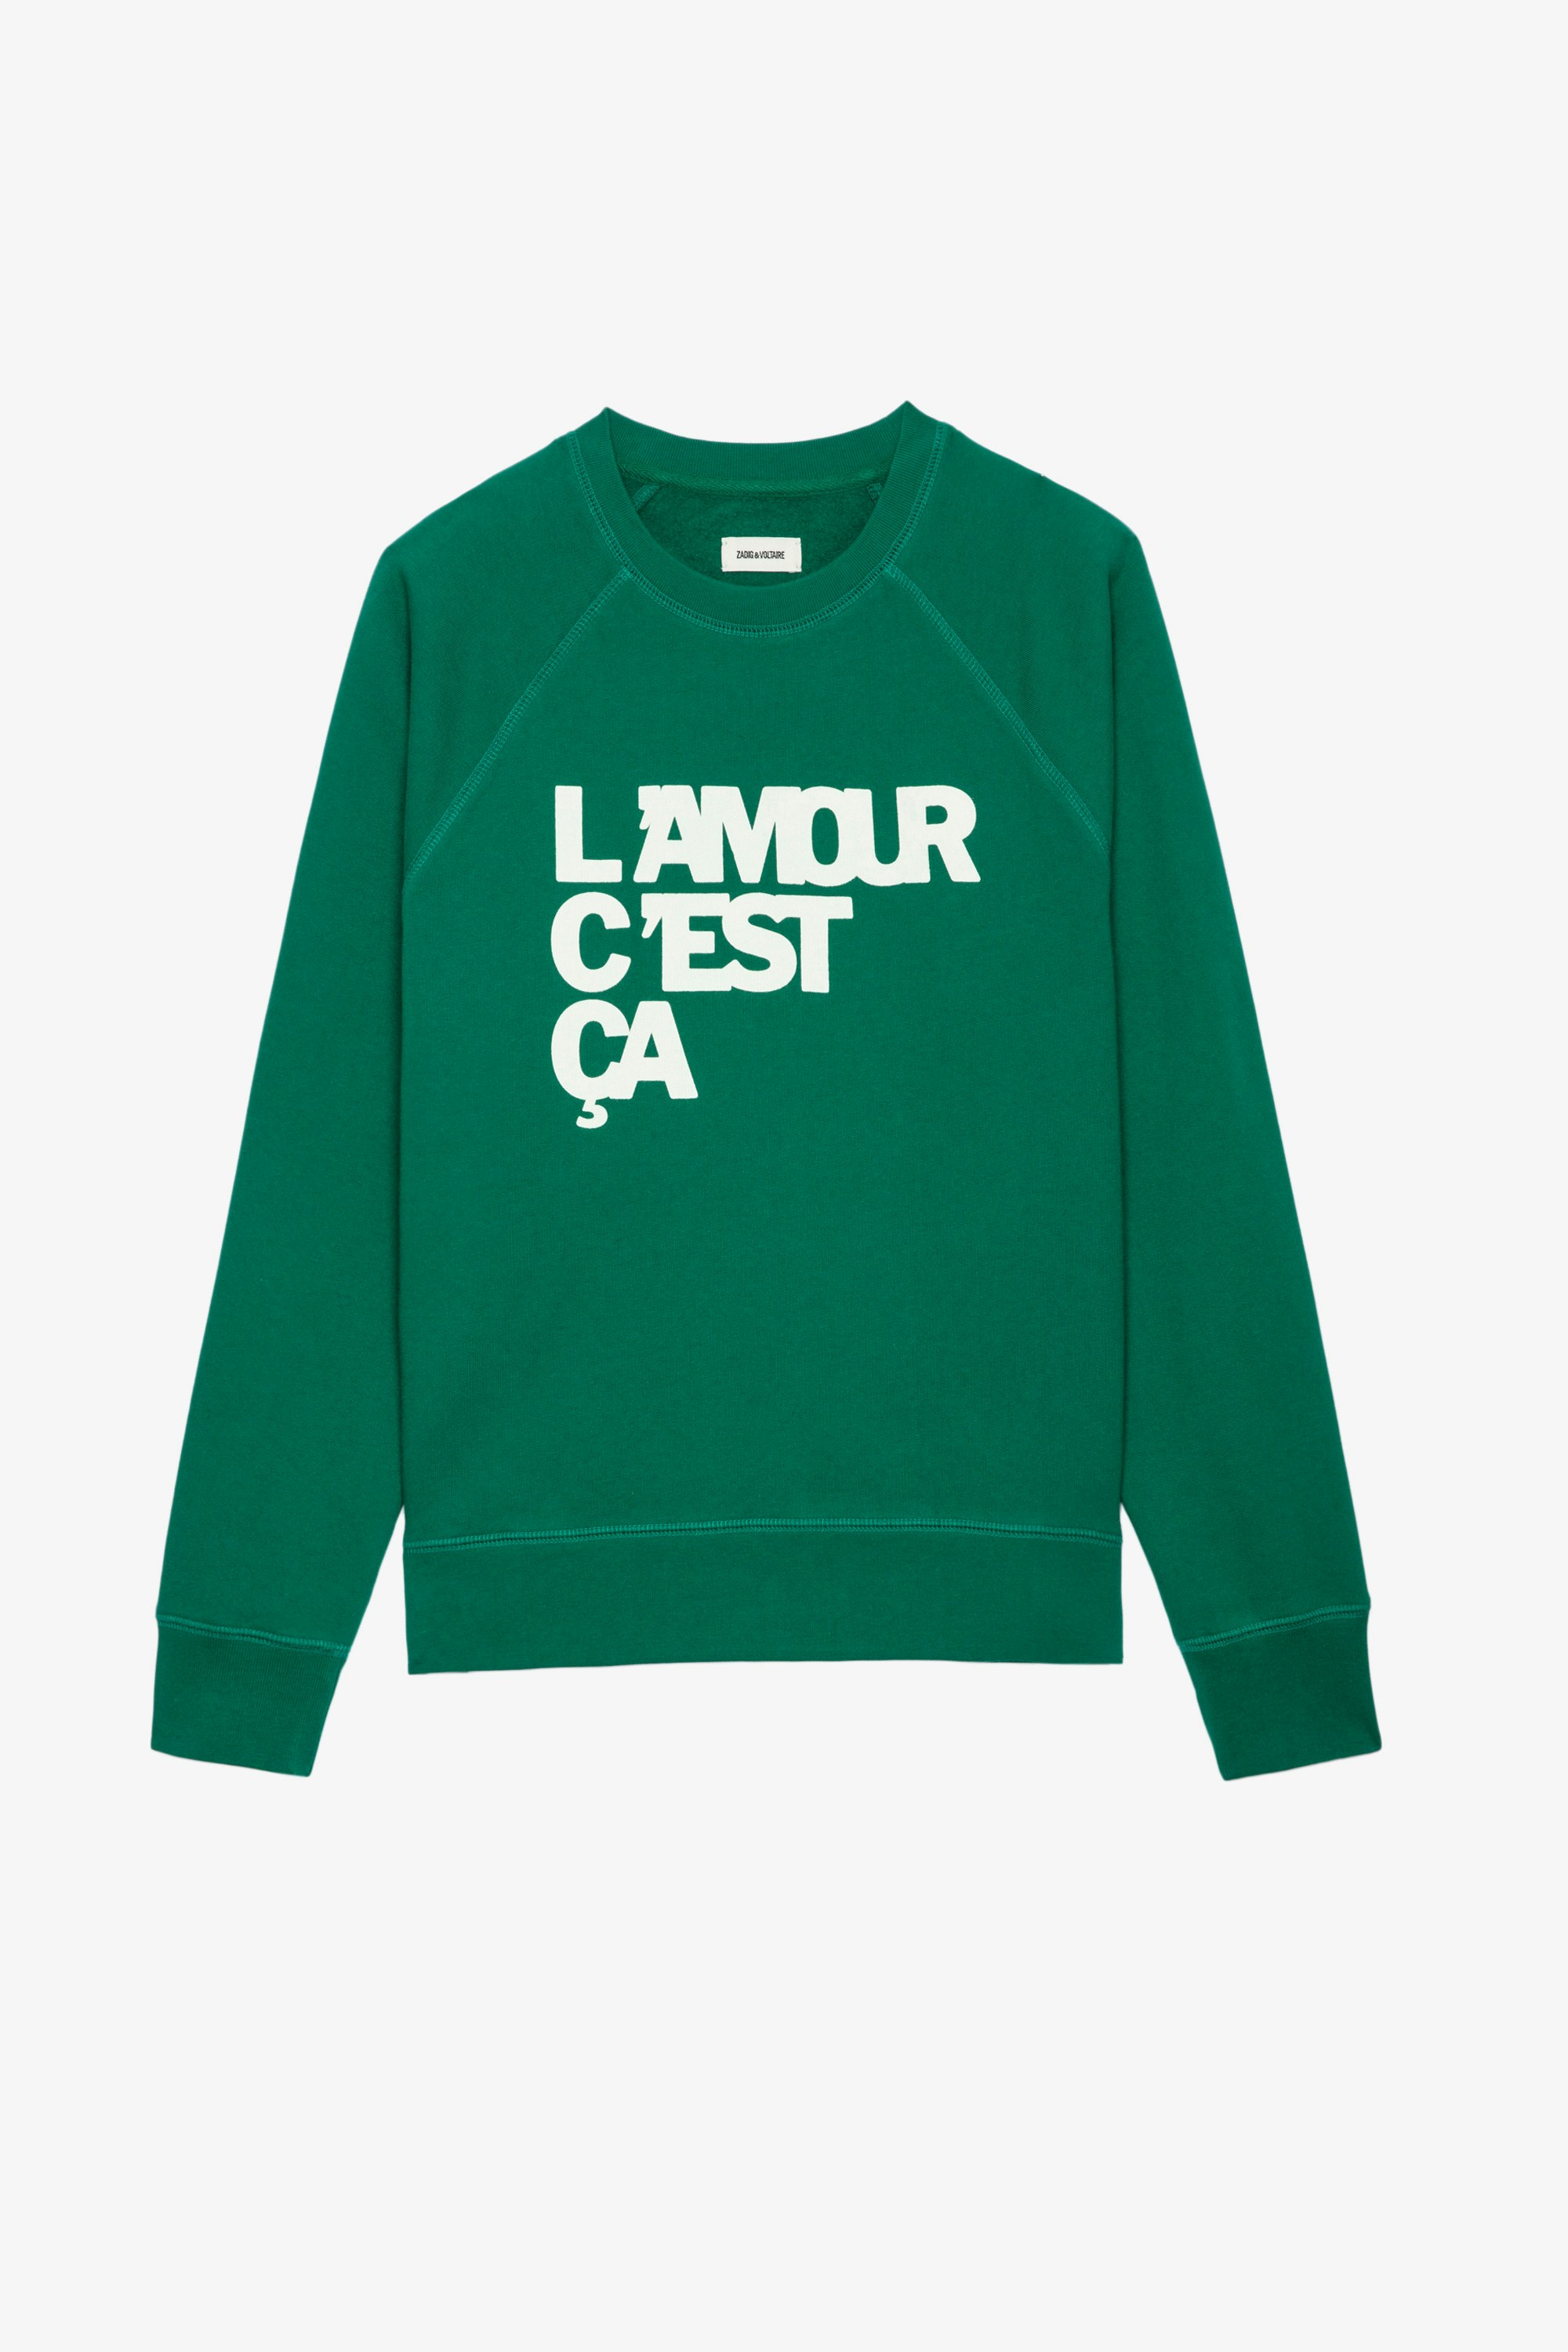 Sweatshirt Upper L'amour c'est ça Damen-Sweatshirt aus grüner Baumwolle mit der Aufschrift „L'amour c'est ça“